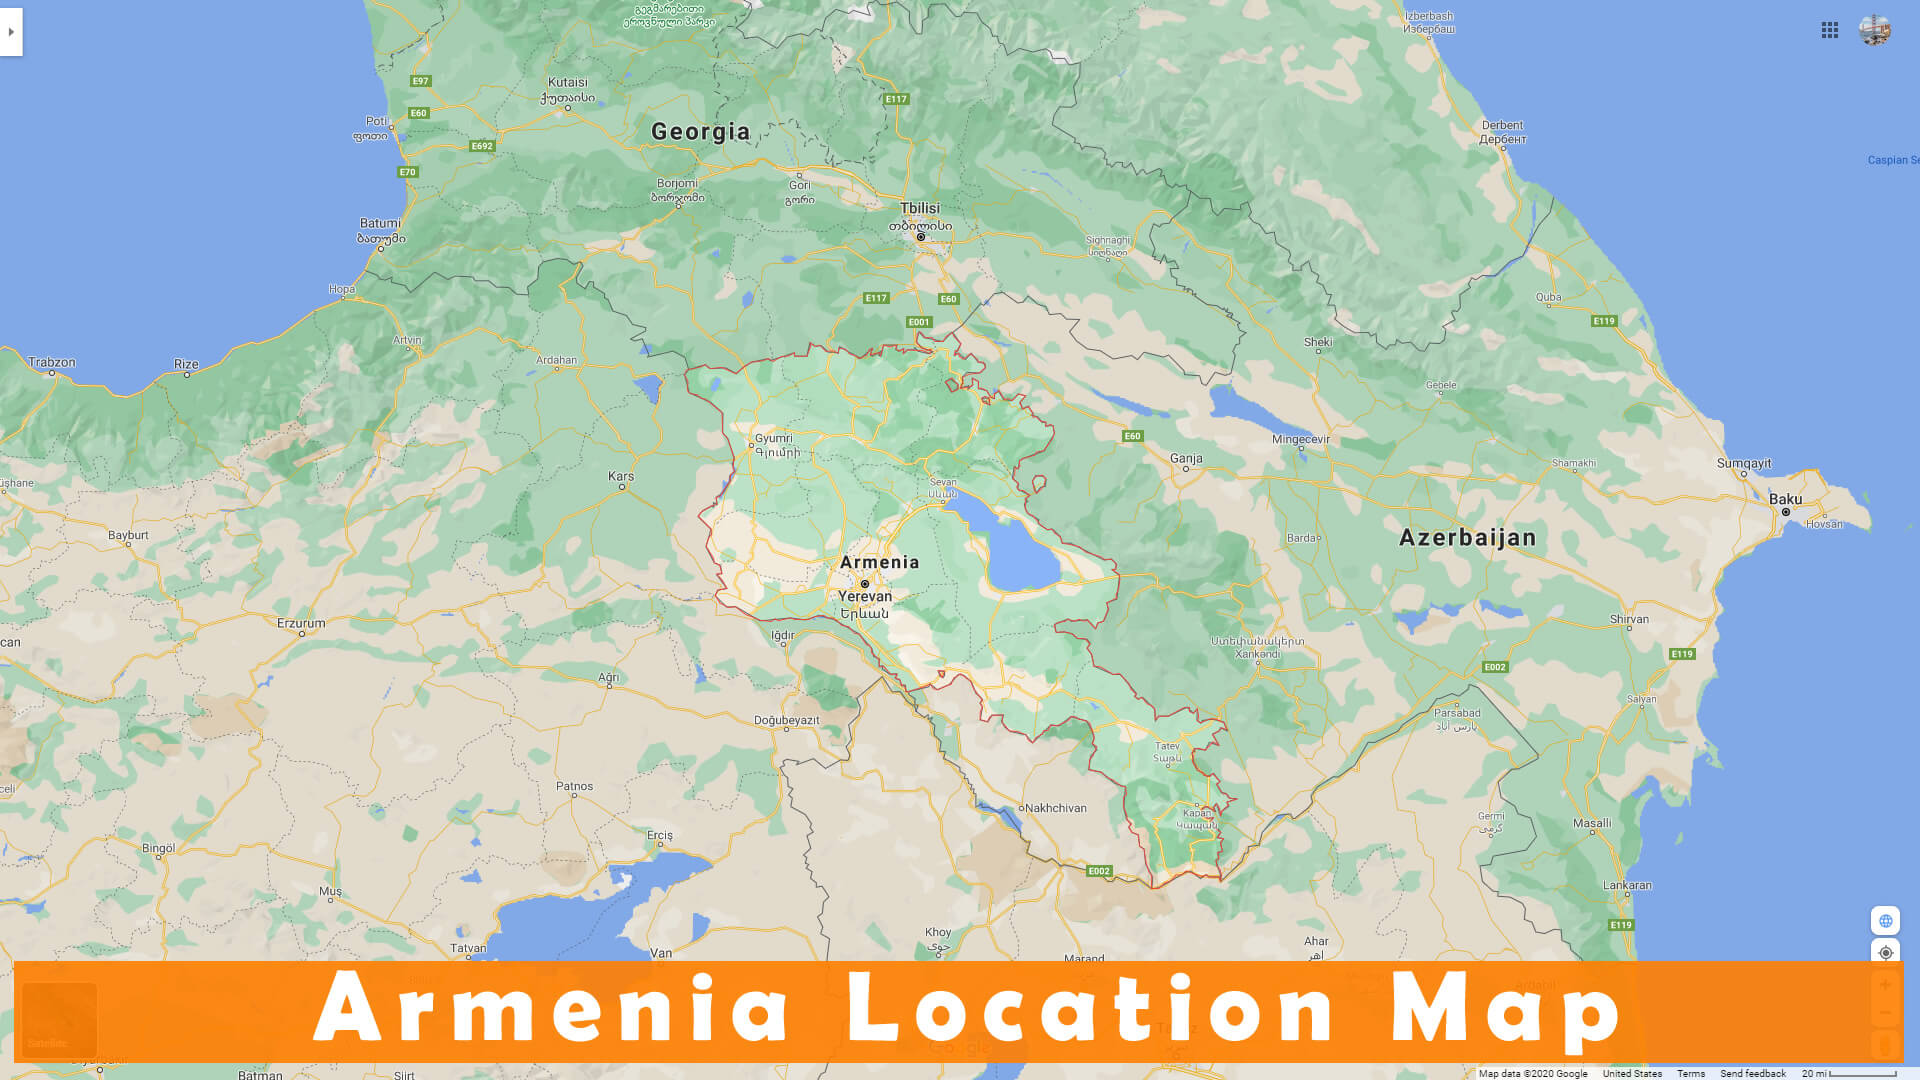 Ermenistan Konum Haritasi